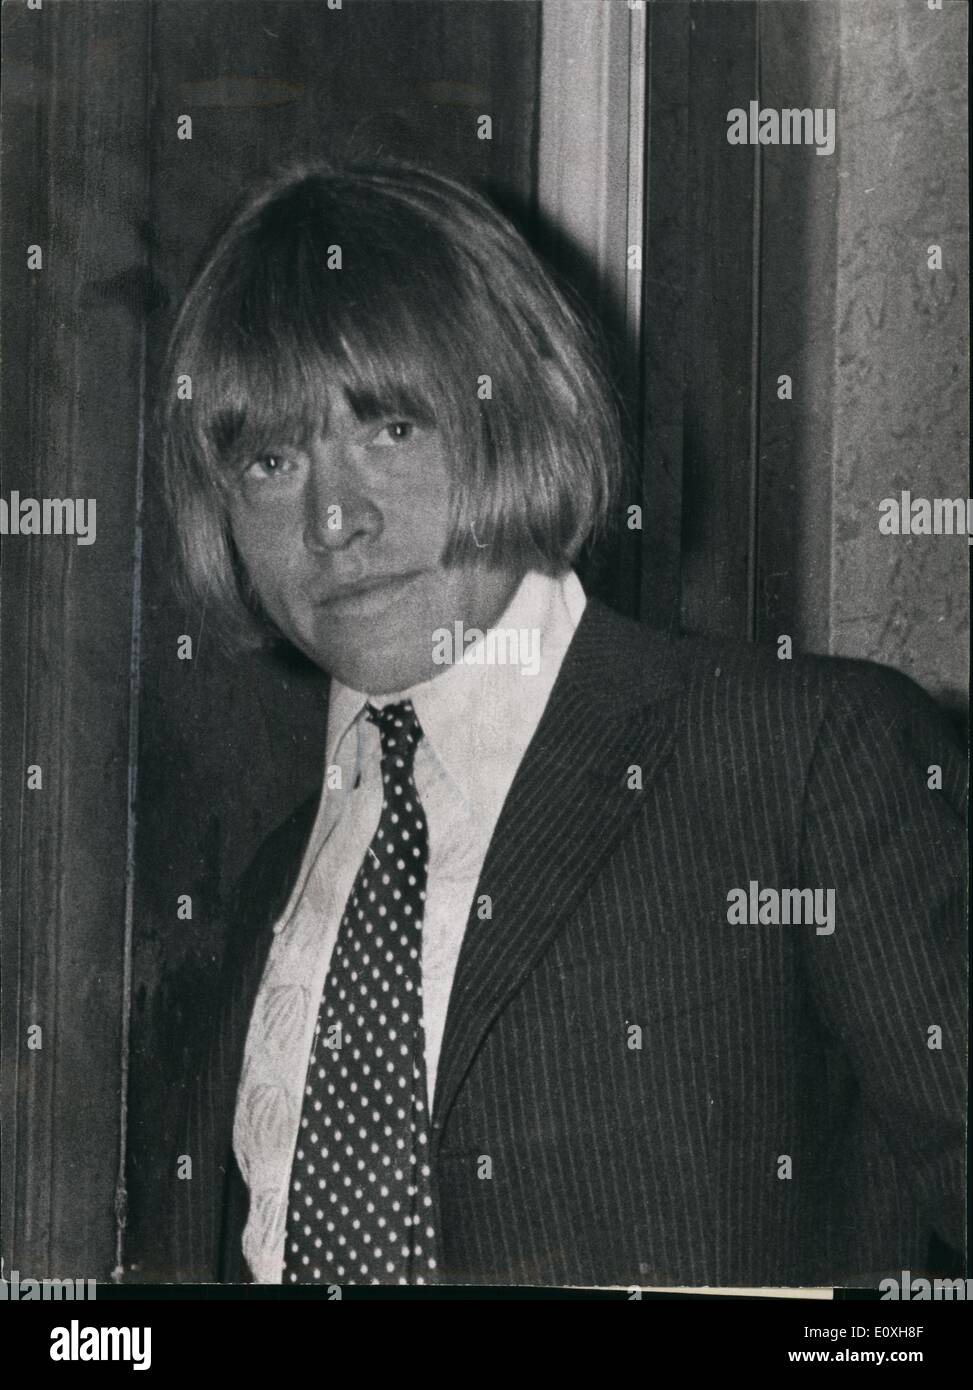 Diciembre 00, 1967 - Rolling Stone Brian Jones encarcelado durante nueve meses: Rolling Stones guitarrista Braian Jones, de 25 años, fue encarcelado por total de nie meses esta tarde tras admitir dos cargos de narcotráfico. También se le ordenó pagar &pound;265.10s costos. Para permitir su plana para ser utilizado para fumar cannabis, Jones fue encarcelado durante nueve meses, con tres meses por posesión de cannabis concurrentes. Jones, el abogado, el Sr. James ''ilegible" QC, solicitó la libertad bajo fianza a la espera de una apelación contra la sentencia, pero esta propuesta fue rechazada por el presidente, Sr.  Seaton Foto de stock